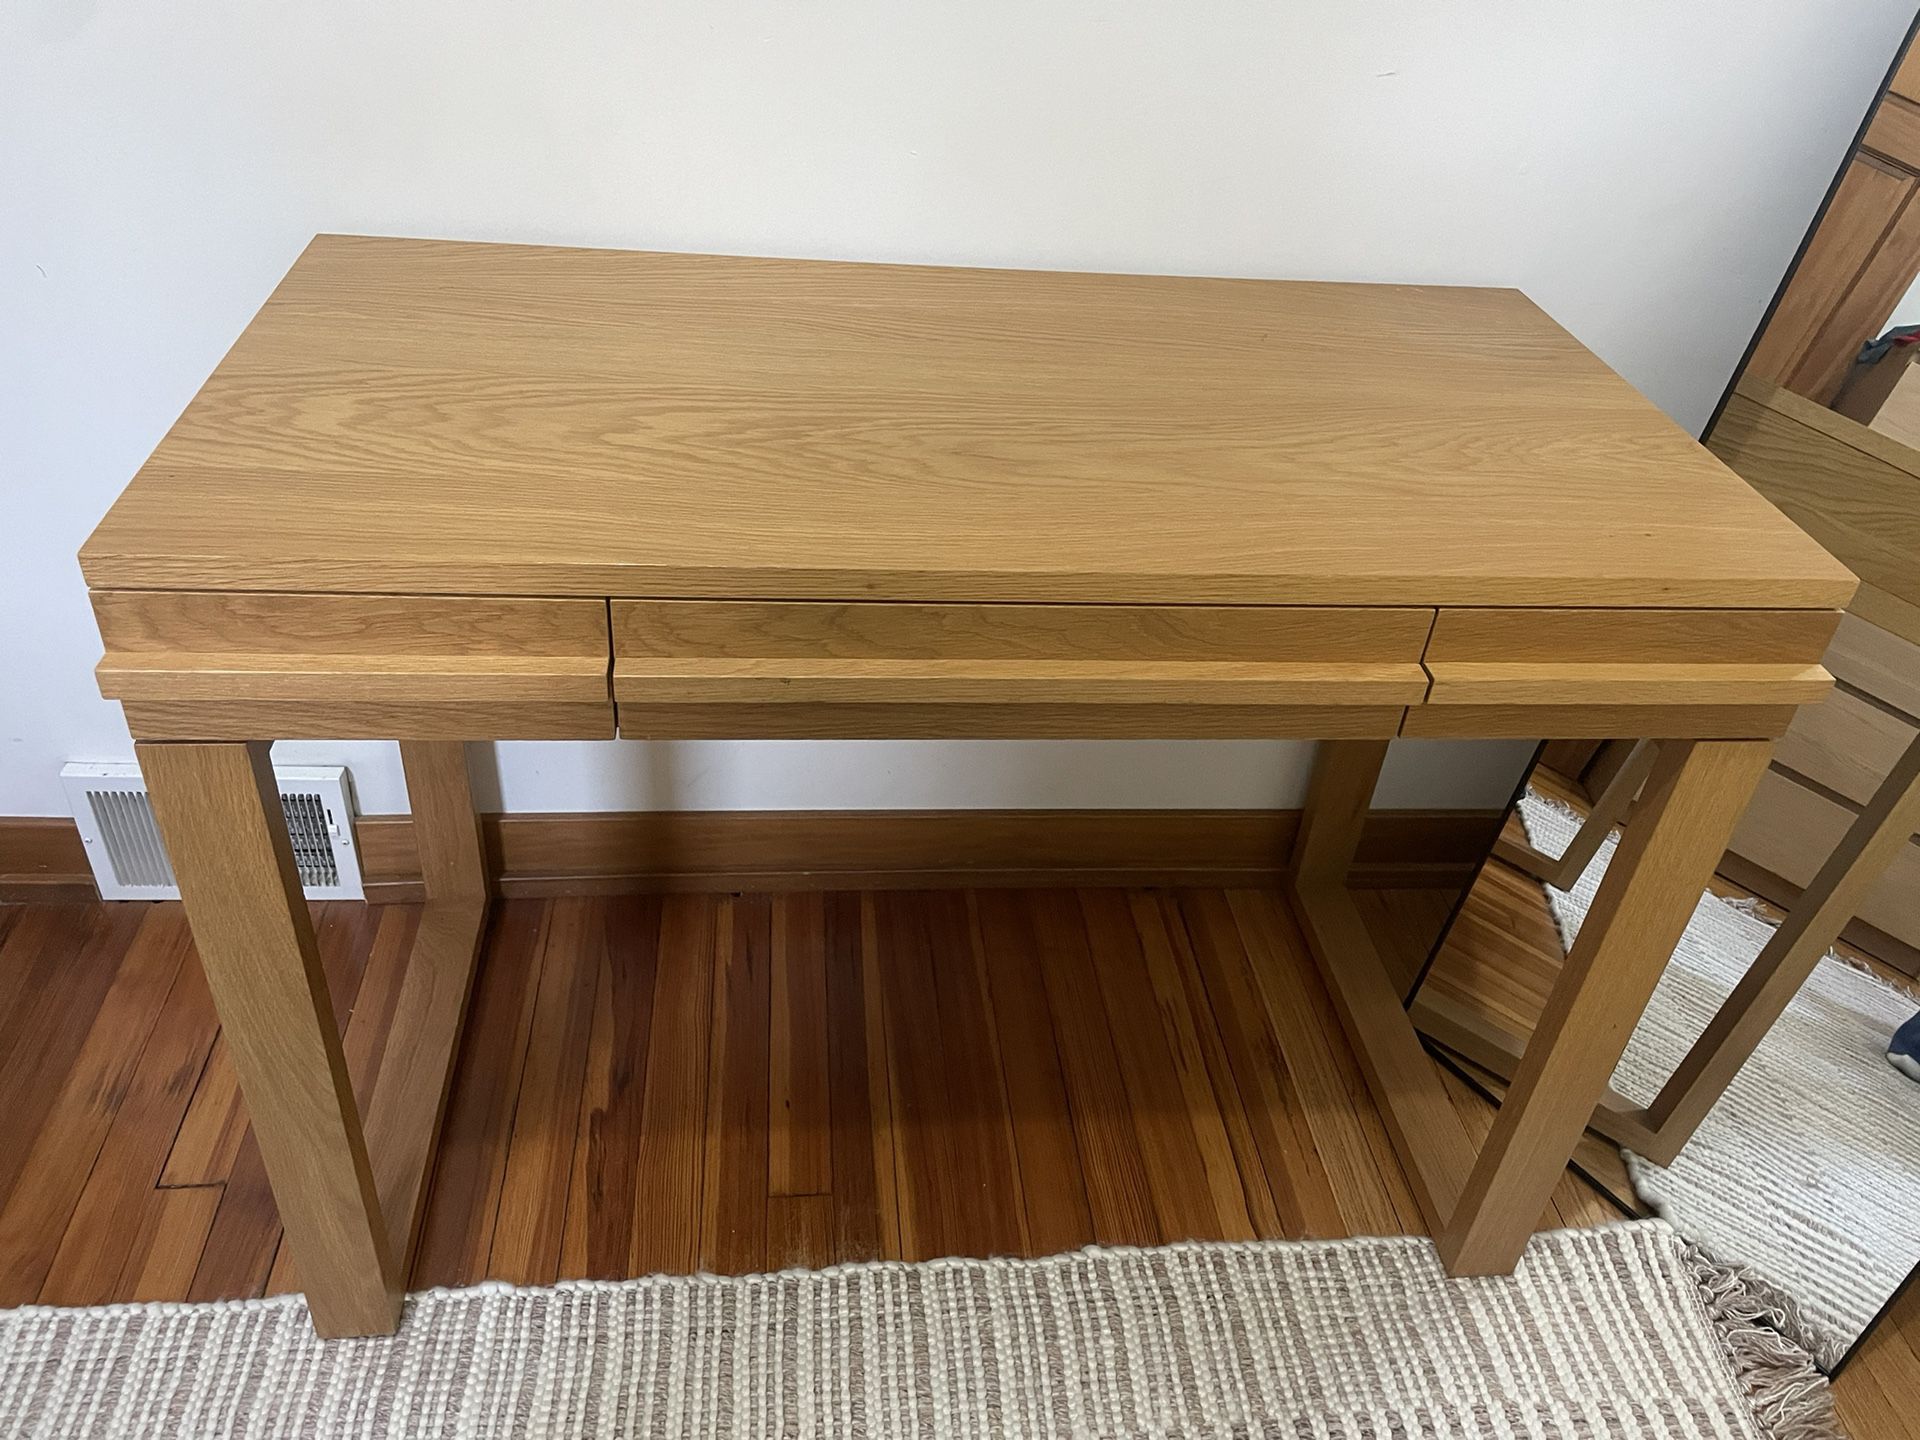 Solid Oak Wood Desk 